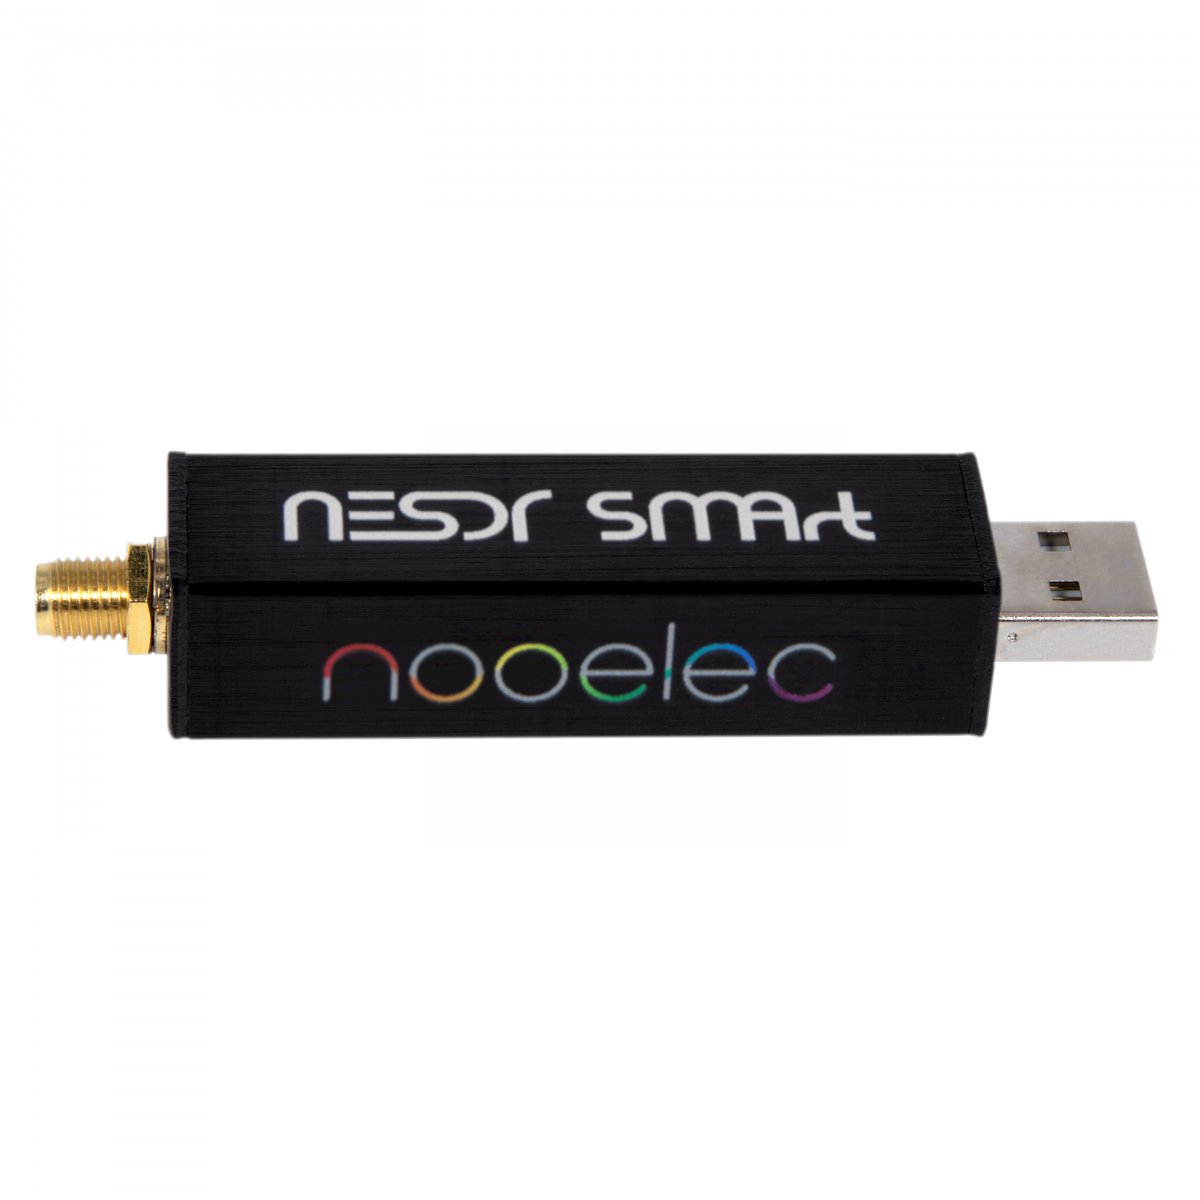 Nooelec - Nooelec NESDR SMArt v5 SDR - HF/VHF/UHF () RTL-SDR.  RTL2832U & R820T2-Based Software Defined Radio - Software Defined Radio